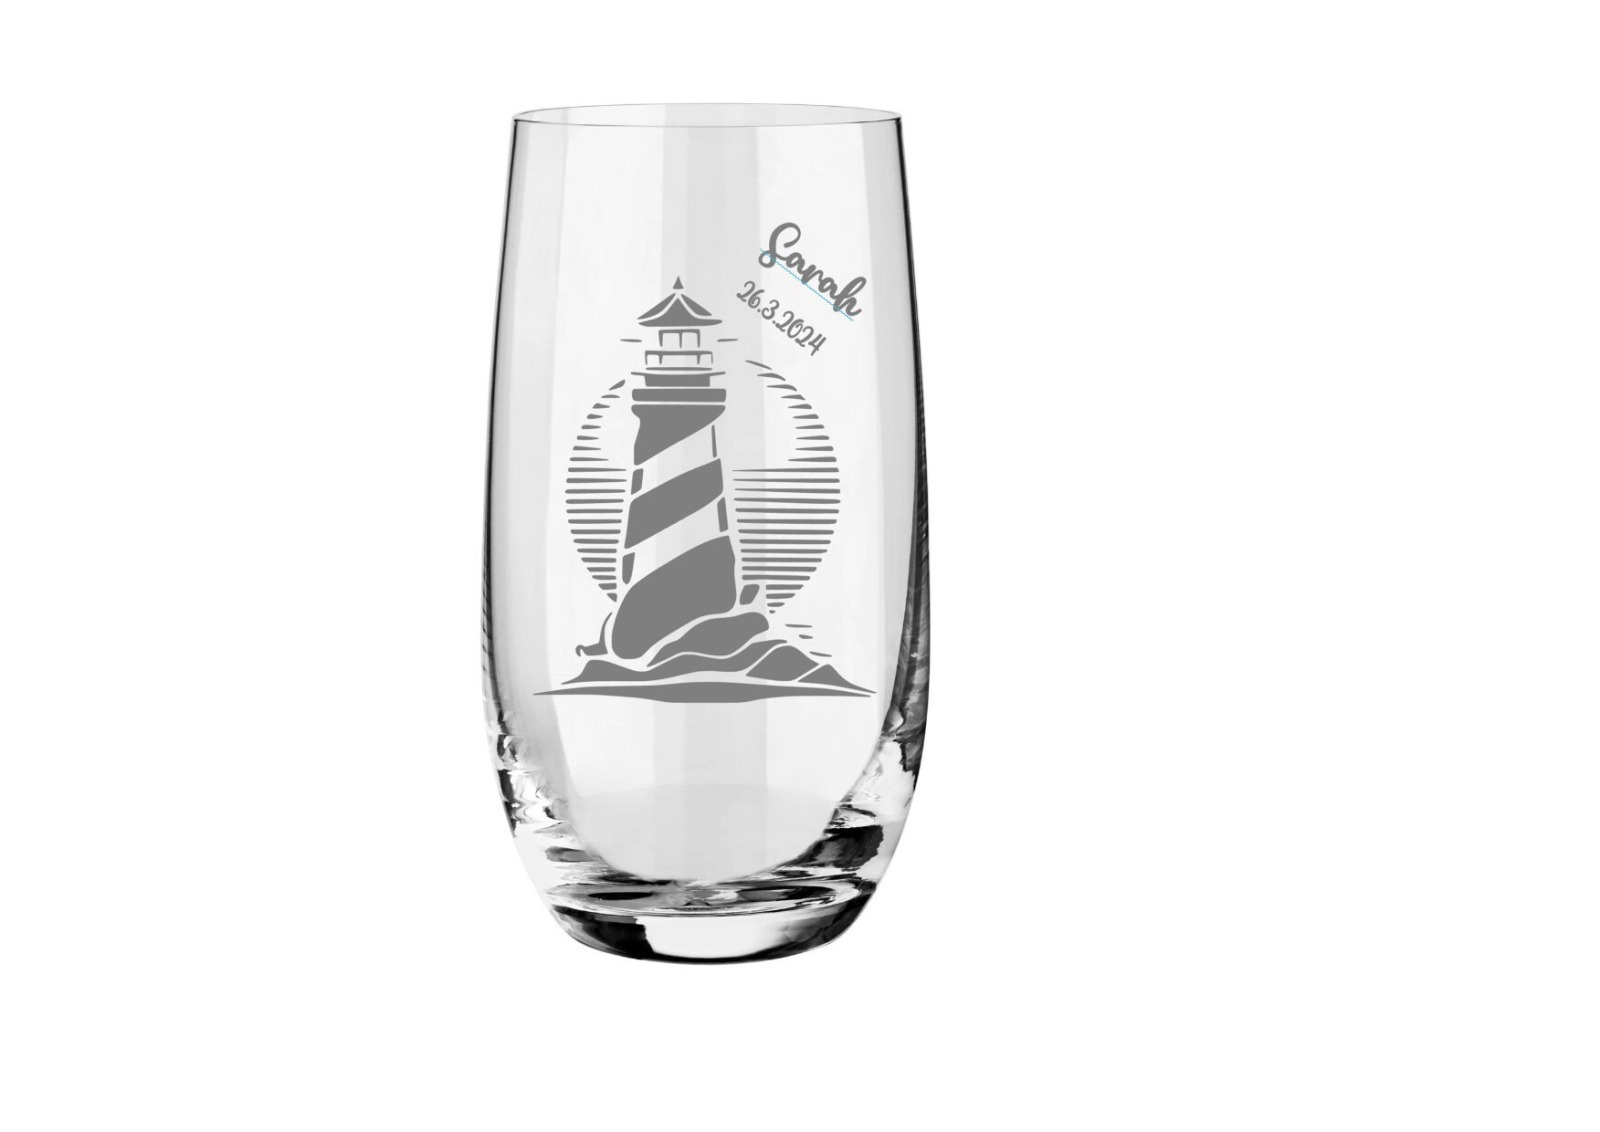 Hochwertiges maritimes Trinkglas mit individueller Gravur - Perfekt personalisiertes Geschenk